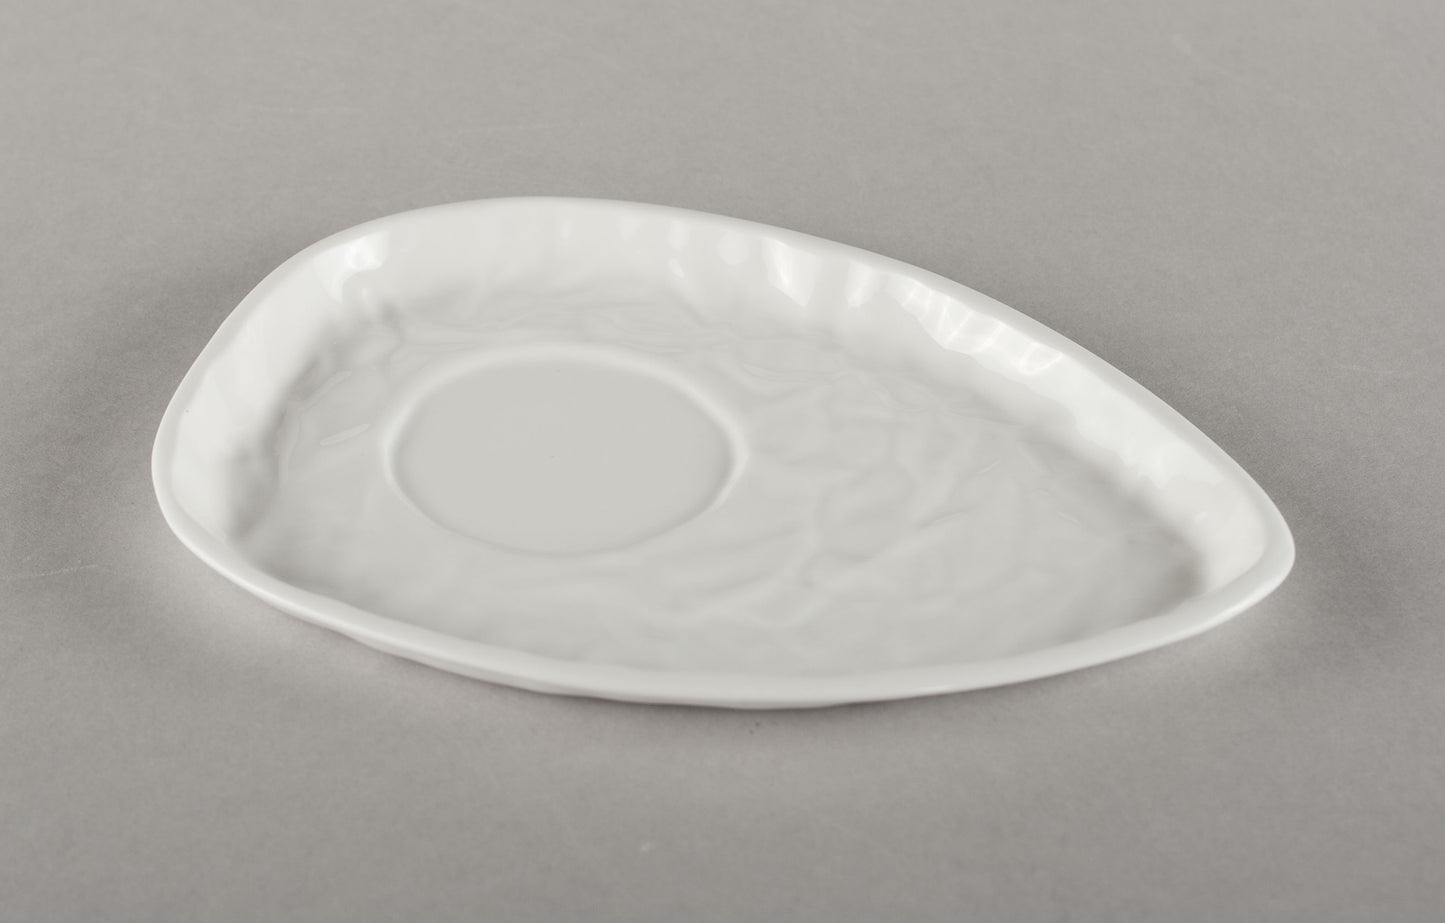 Porcelāna burzīta apakštase kafijas krūzei Co (krūze nav iekļauta)